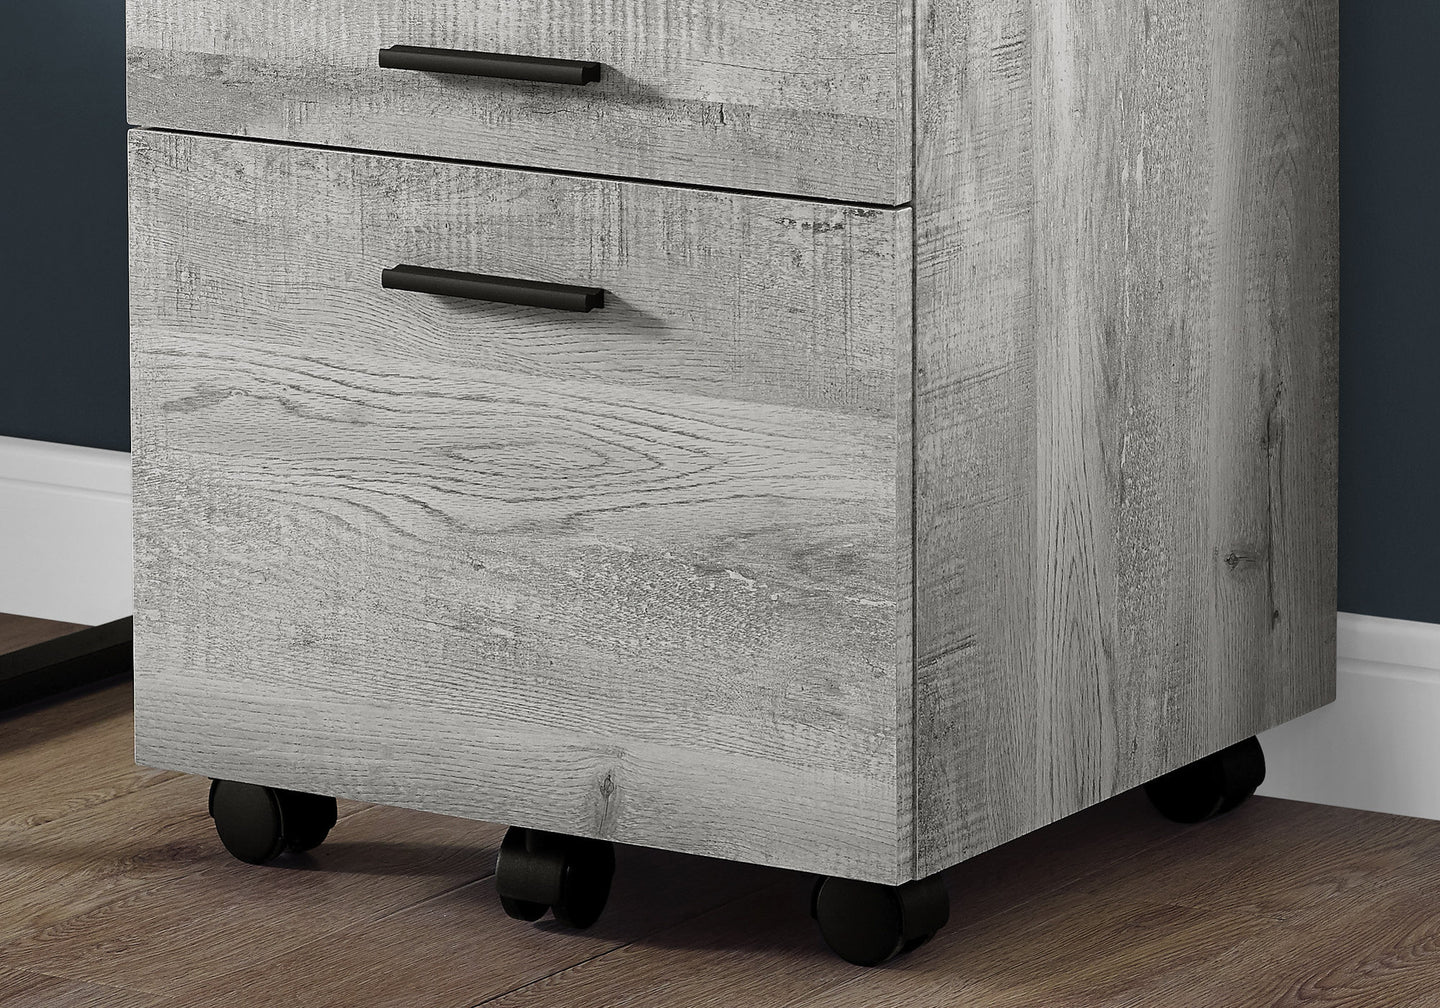 I 7401 Filing Cabinet - 3 Drawer / Grey Reclaimed Wood / Castors - Furniture Depot